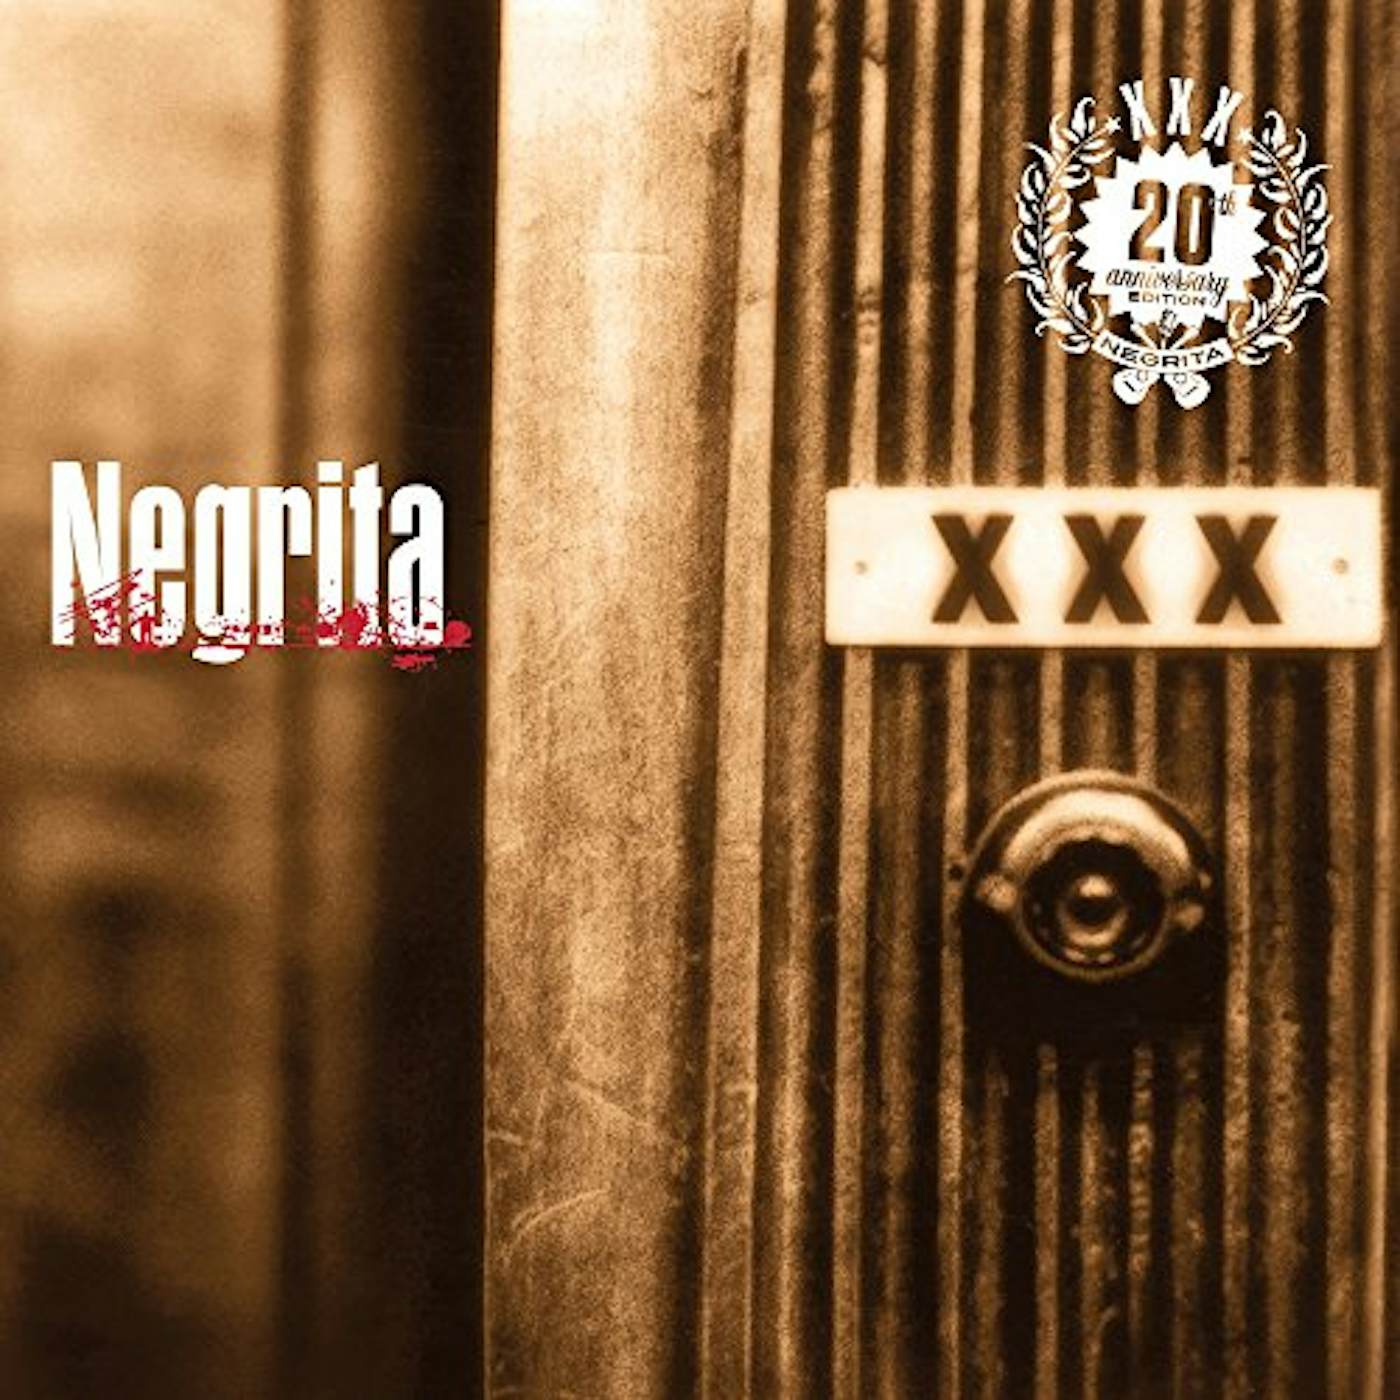 Negrita XXX CD